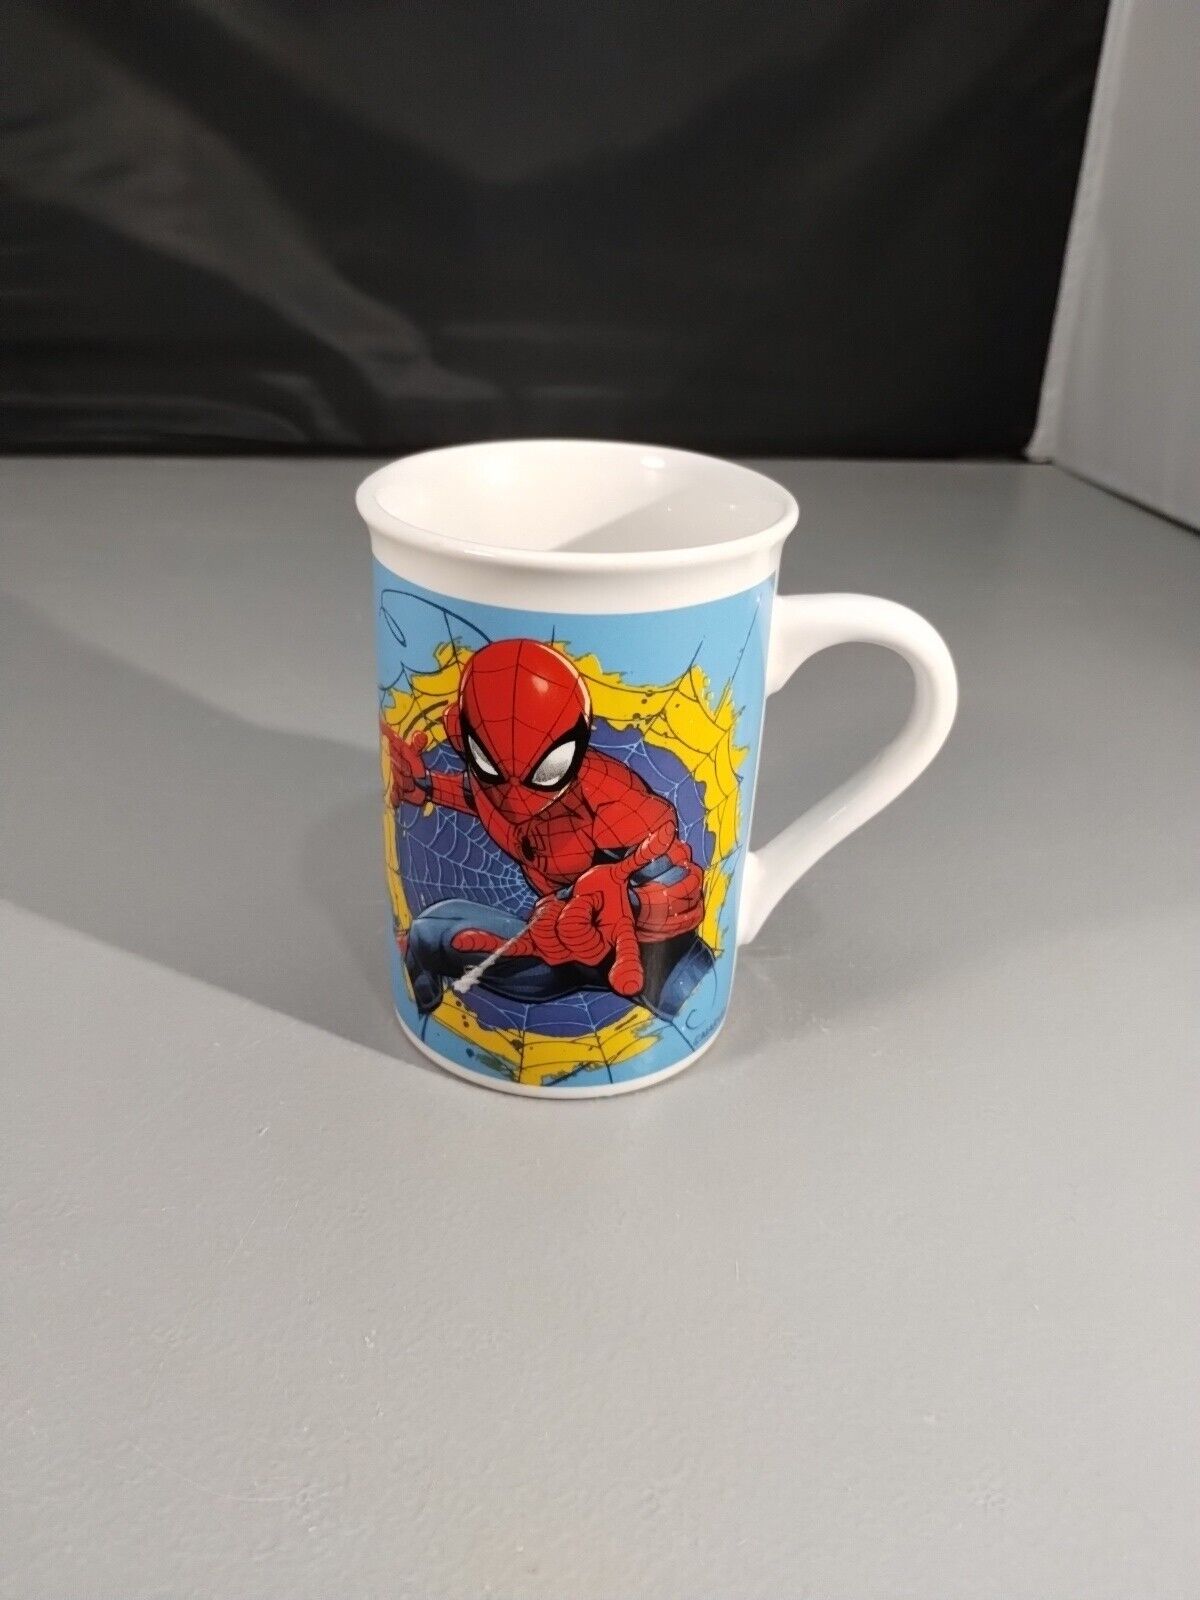 2017 Spiderman Mug by Marvel Comics 4